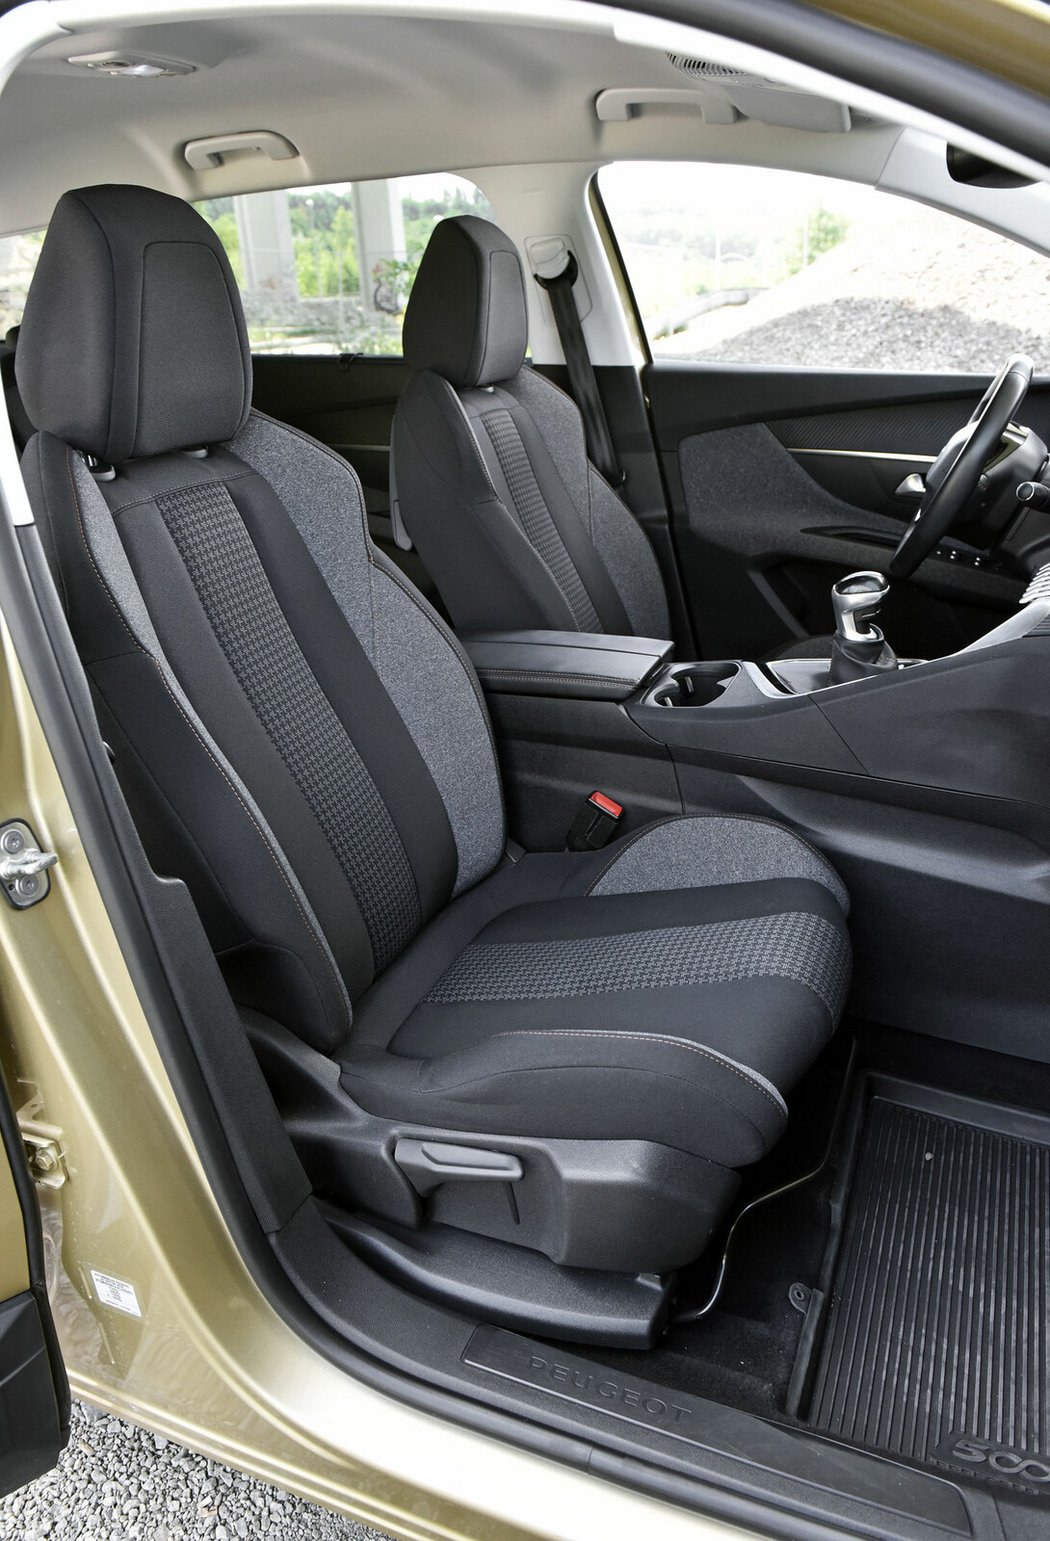 Sedačky v Peugeotu 5008 působí na pohled divokým dojmem, ve skutečnosti ale jde o pohodlné sezení i na dlouhých trasách. Prošoupané koženkové potahy signalizují vyšší nájezd vozu.